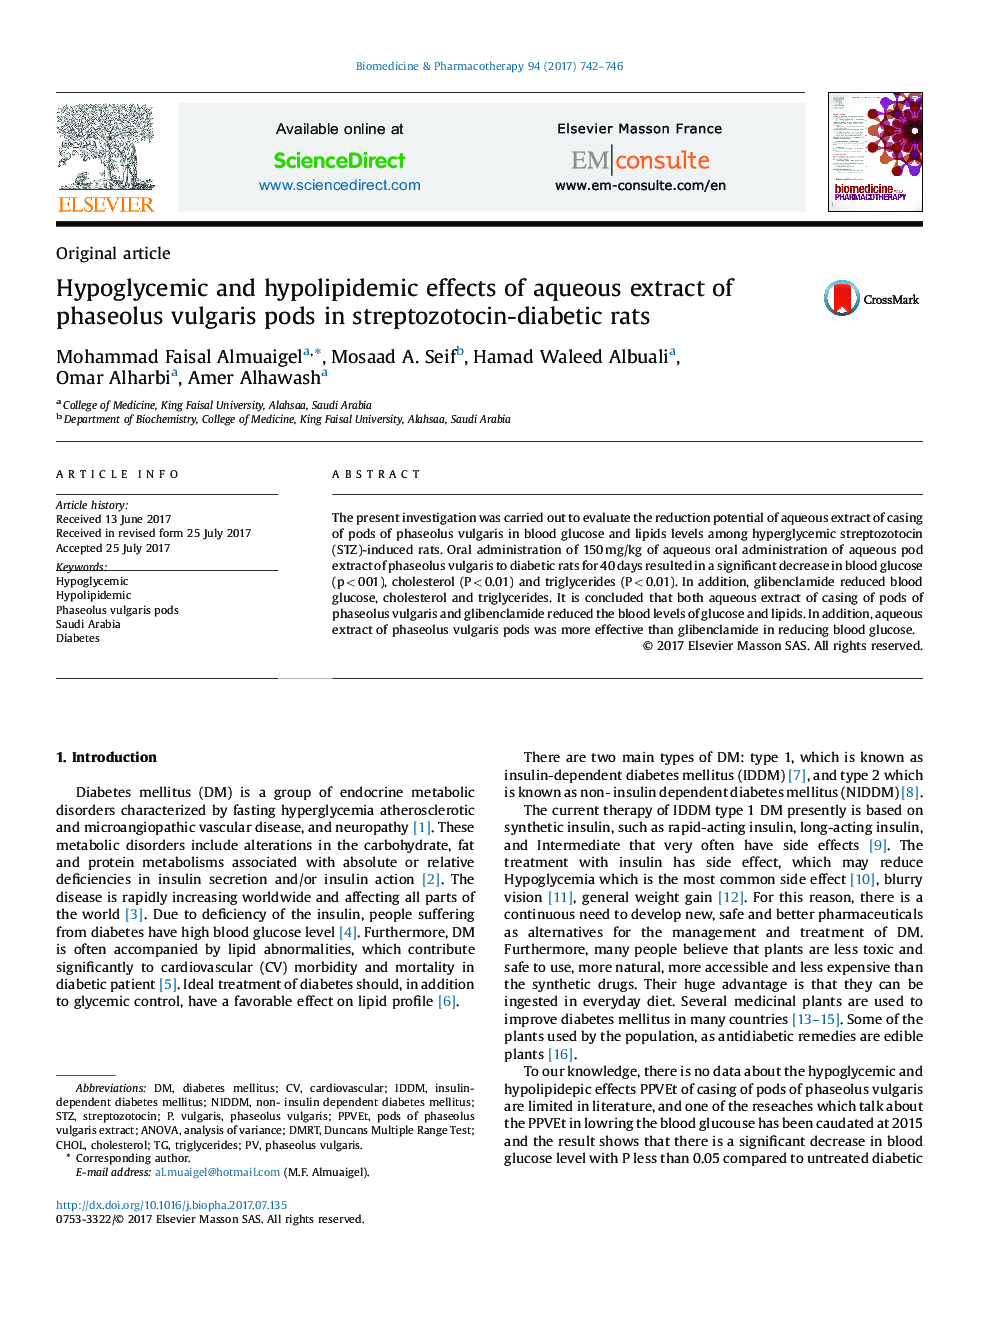 اثرات هیپوگلیسمی و هیپولیپیدمی عصاره آبی غلاف فازولوس ولگاریس در موشهای صحرایی دیابتی استرپتوزوتوسین 